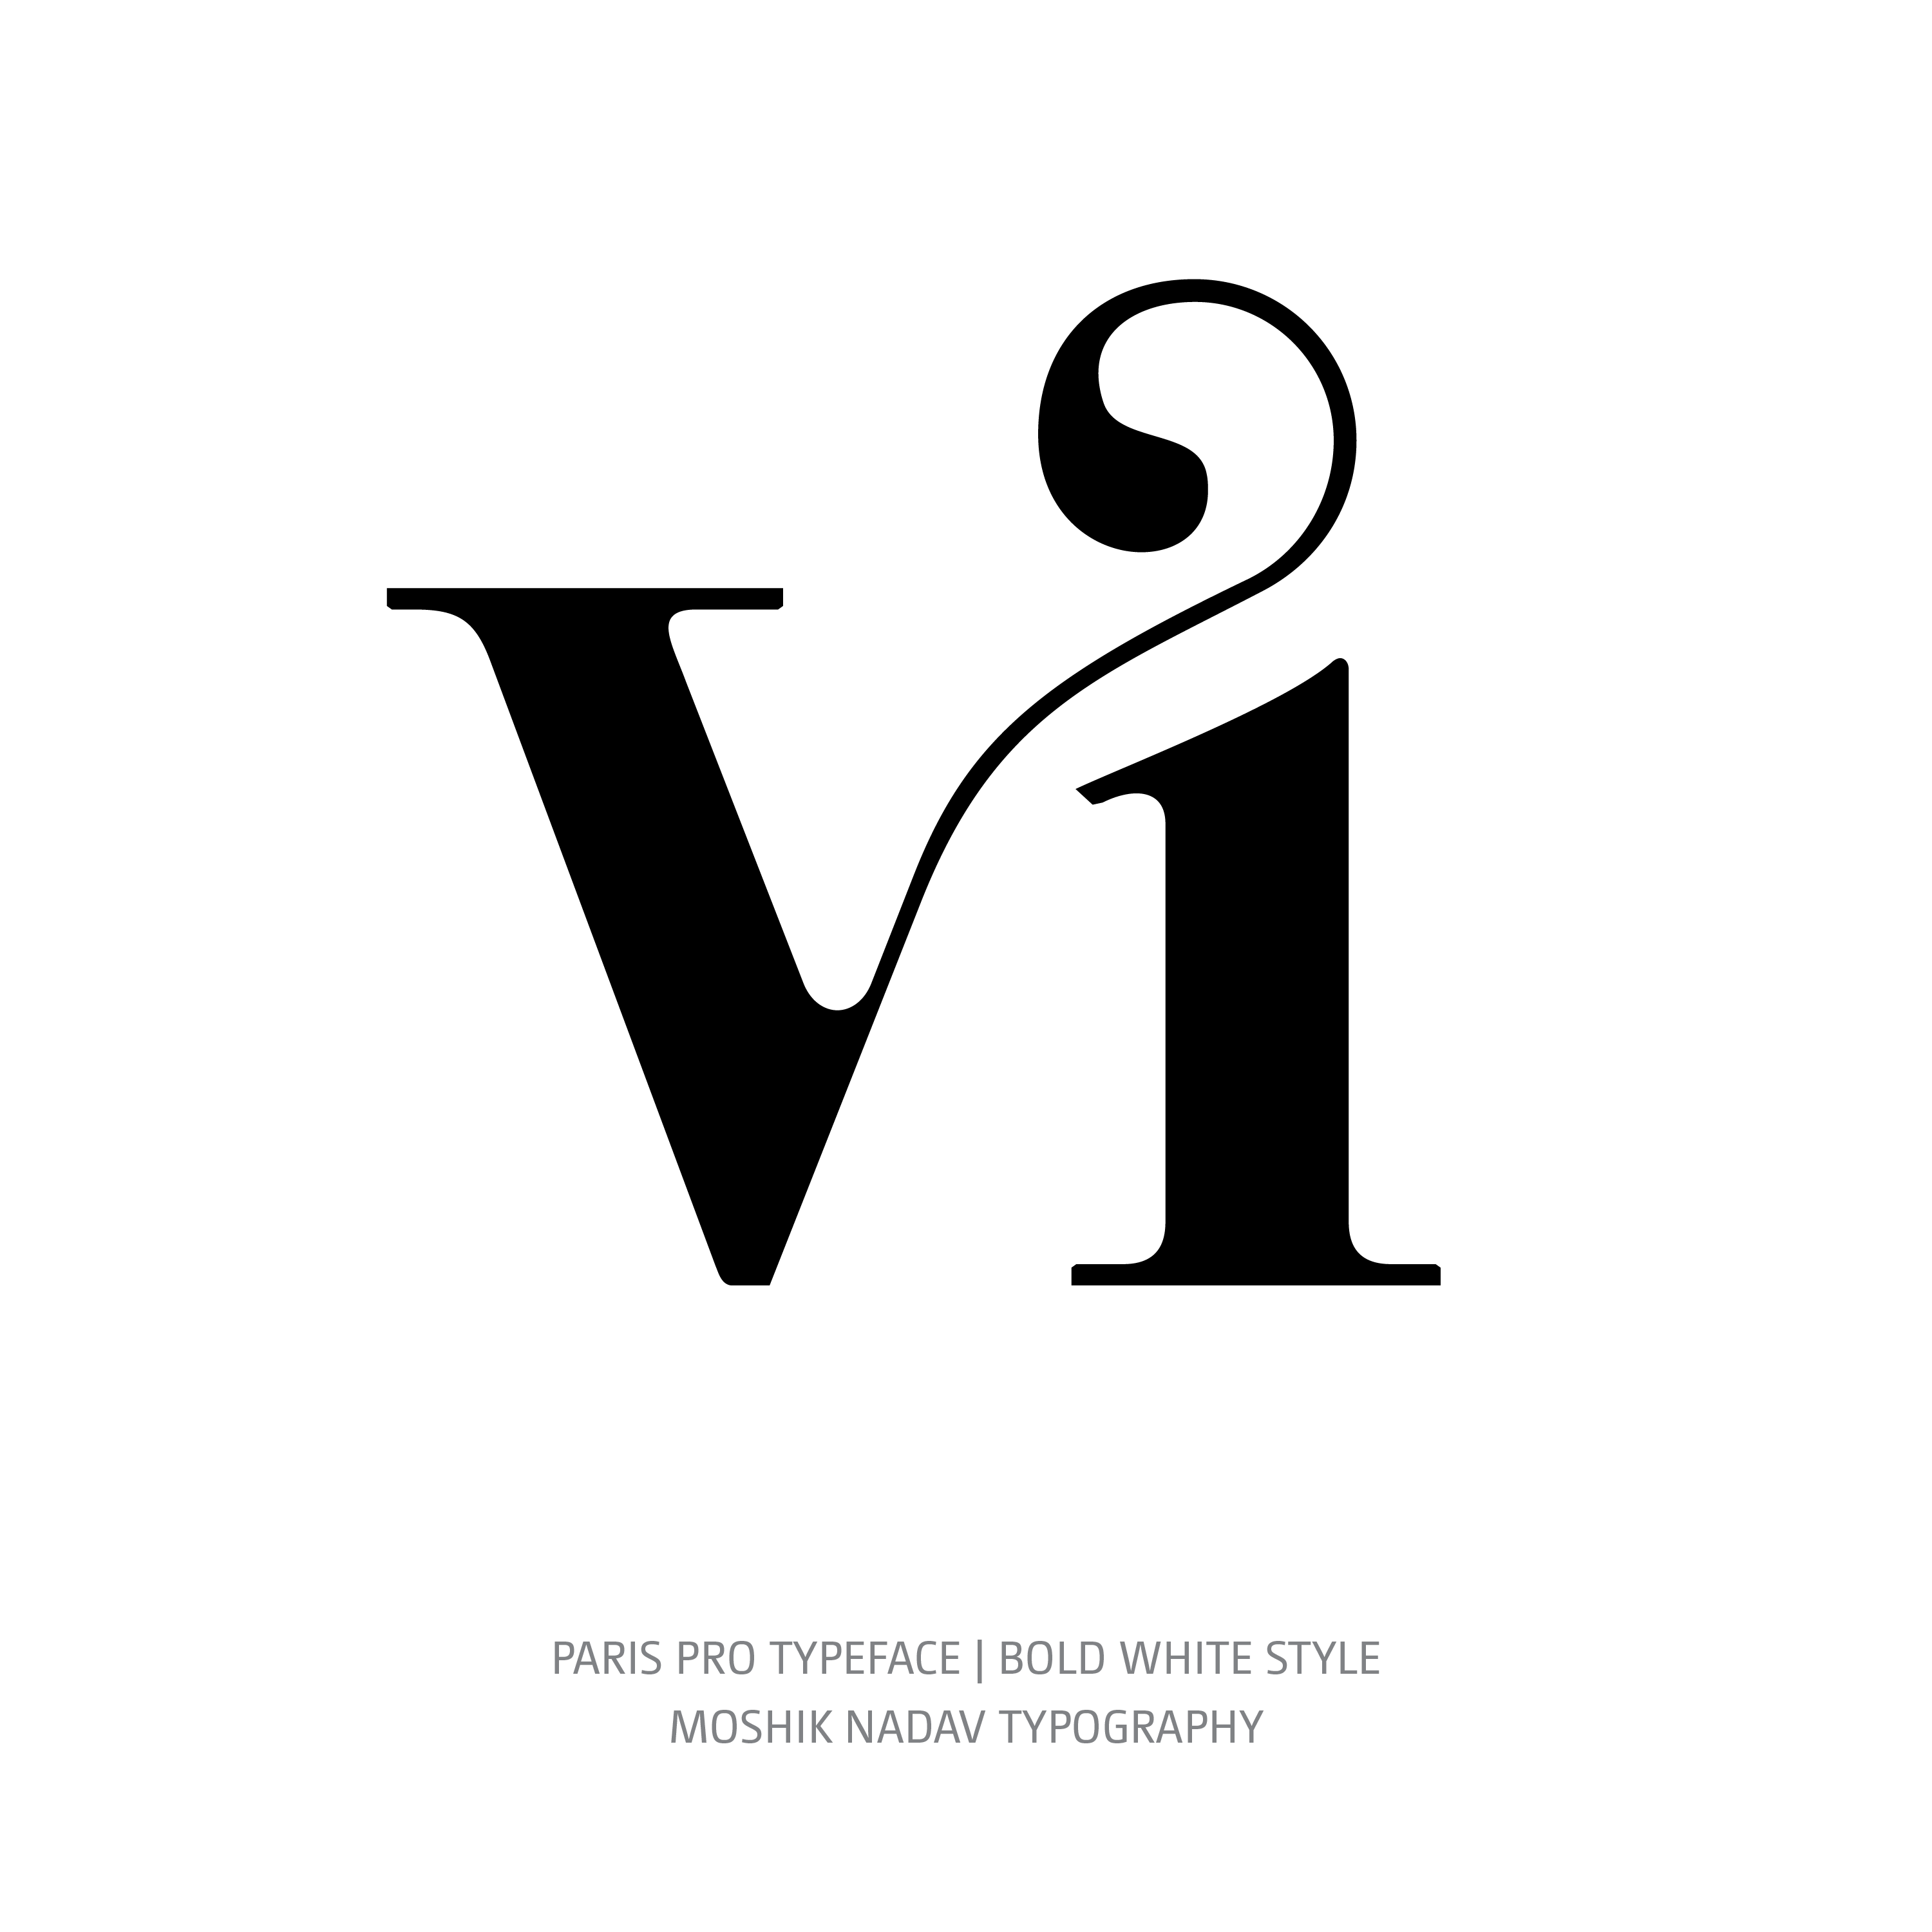 Paris Pro Typeface Bold White vi ligature